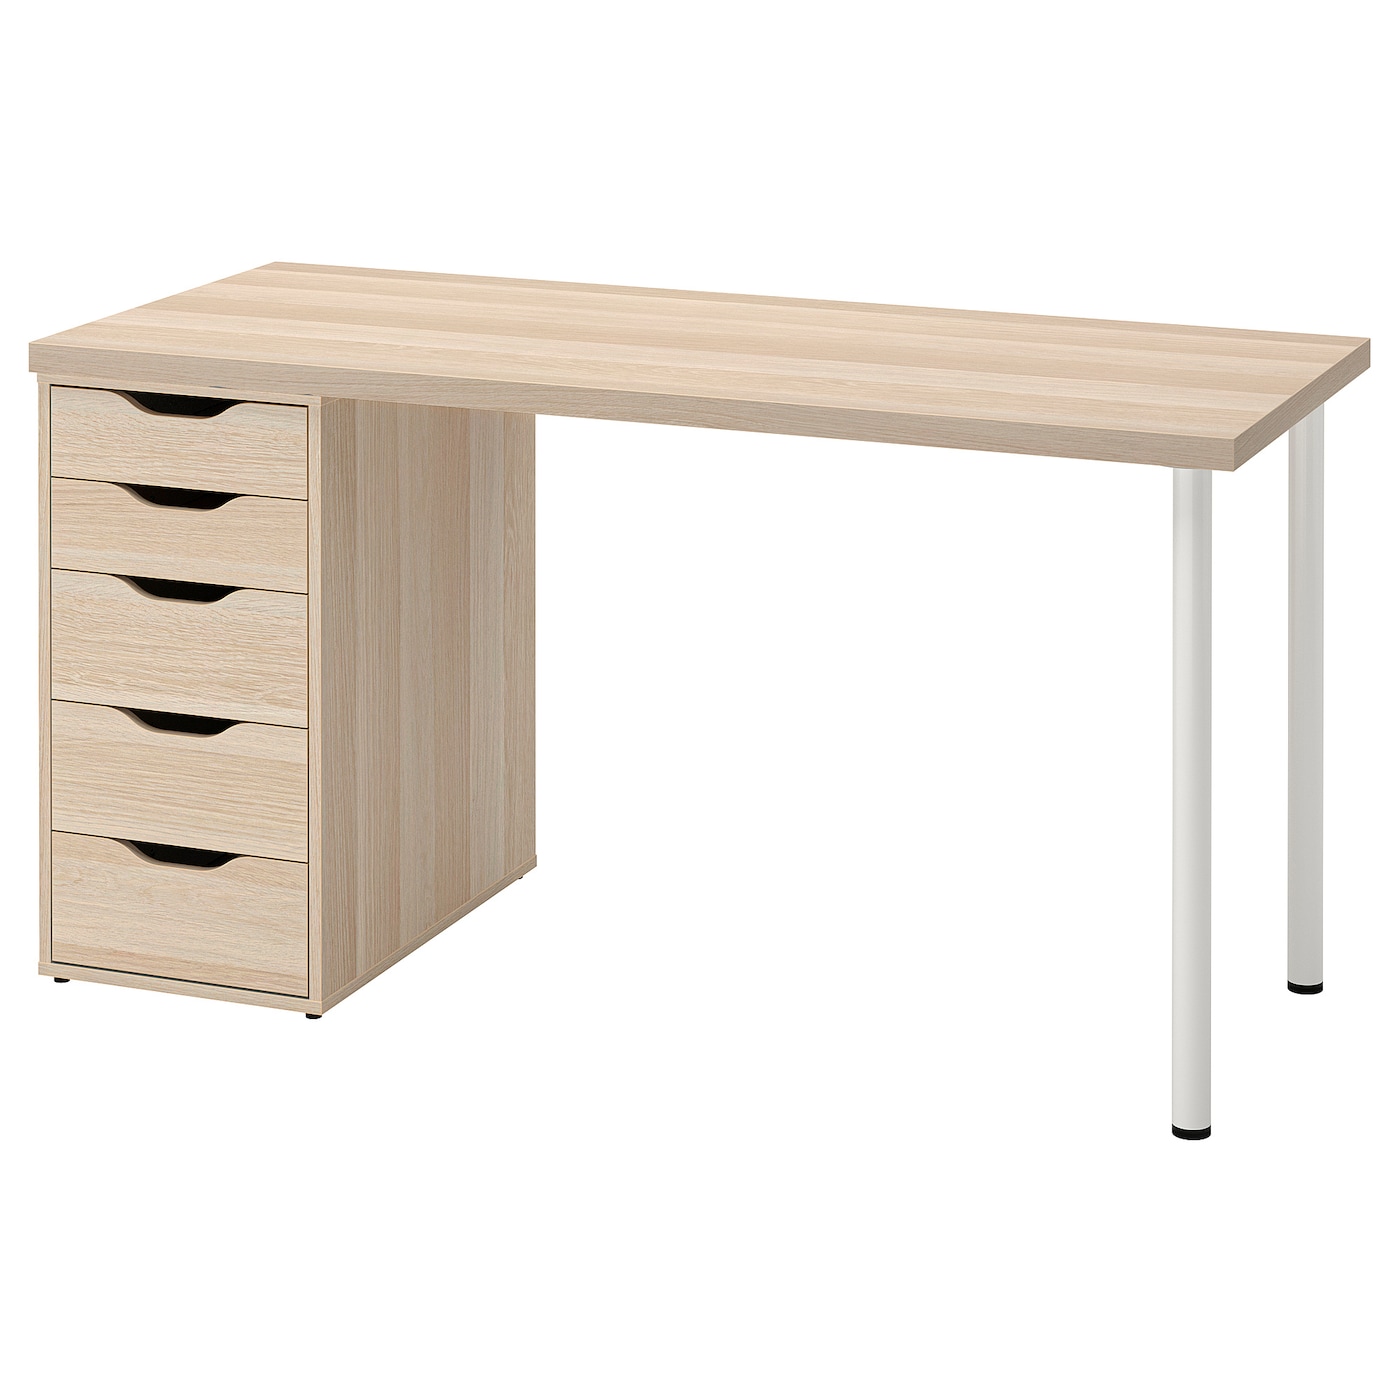 Письменный стол с ящиком - IKEA LAGKAPTEN/ALEX, 140х60 см, под беленый дуб/белый, ЛАГКАПТЕН/АЛЕКС ИКЕА